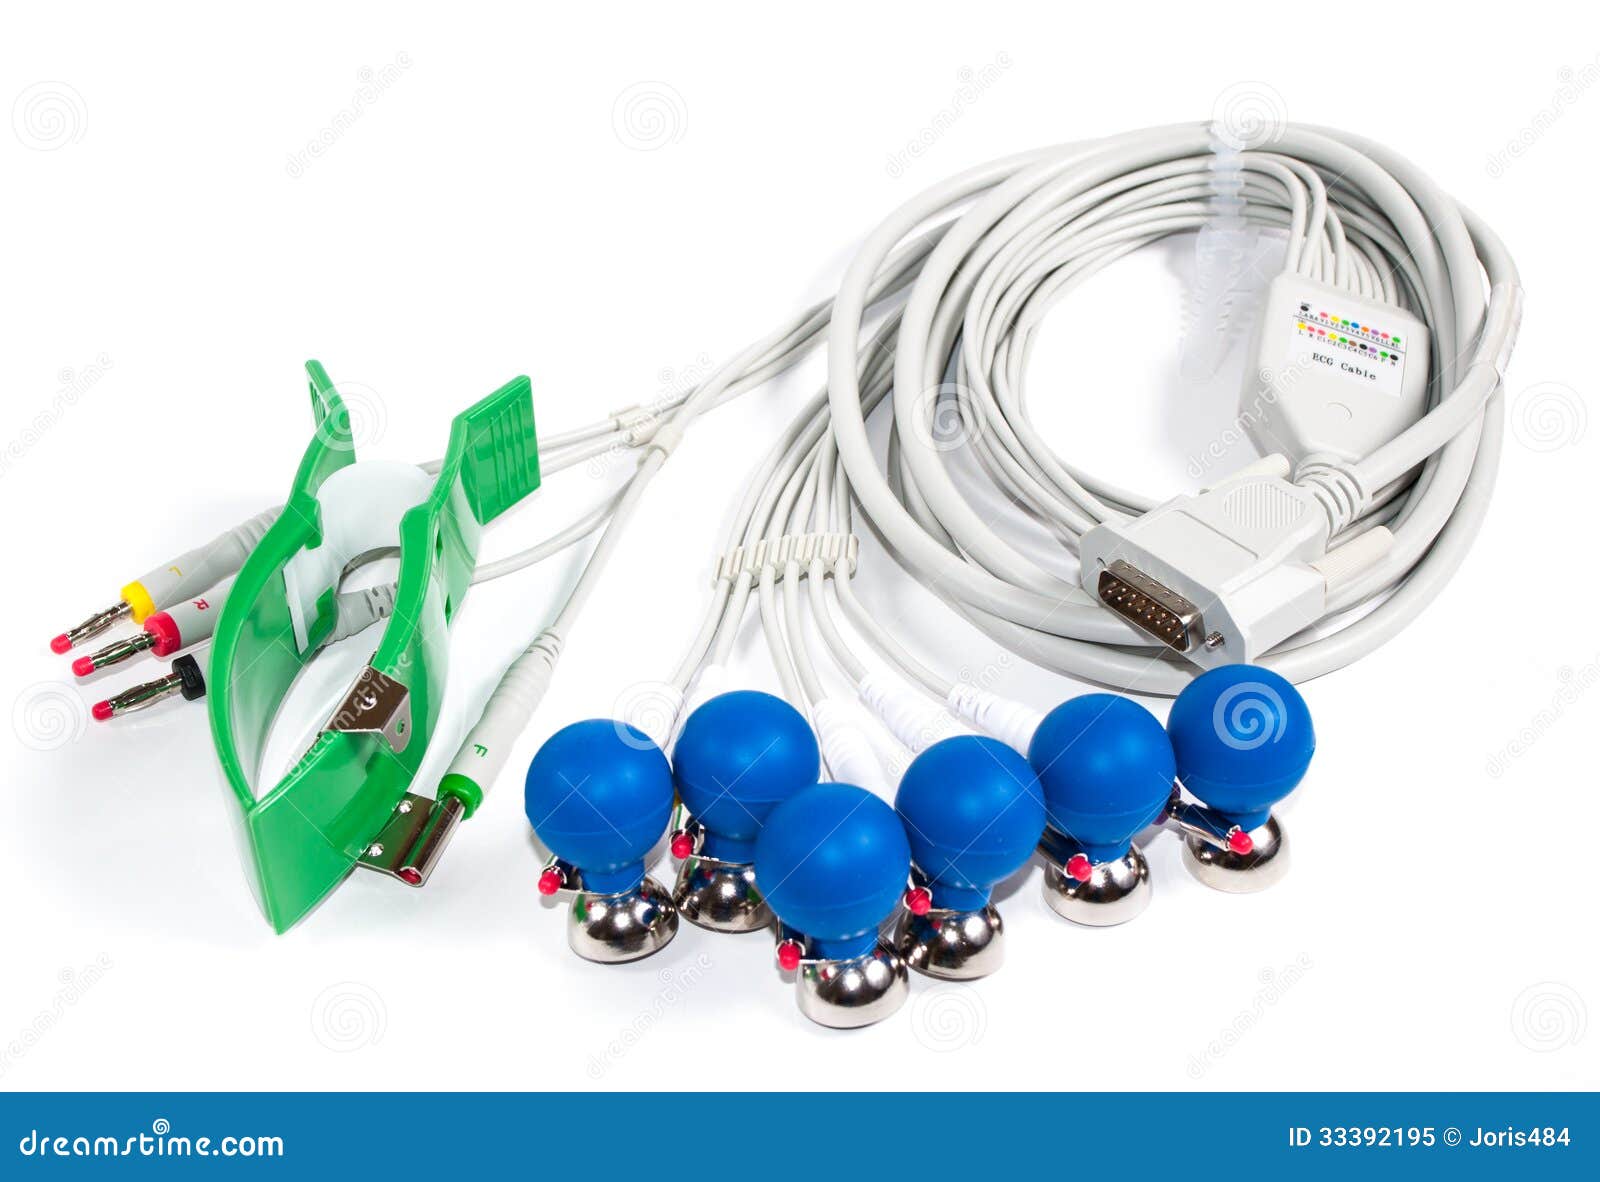 Electrodos y cable de ECG imagen de archivo. Imagen de objeto - 33392195